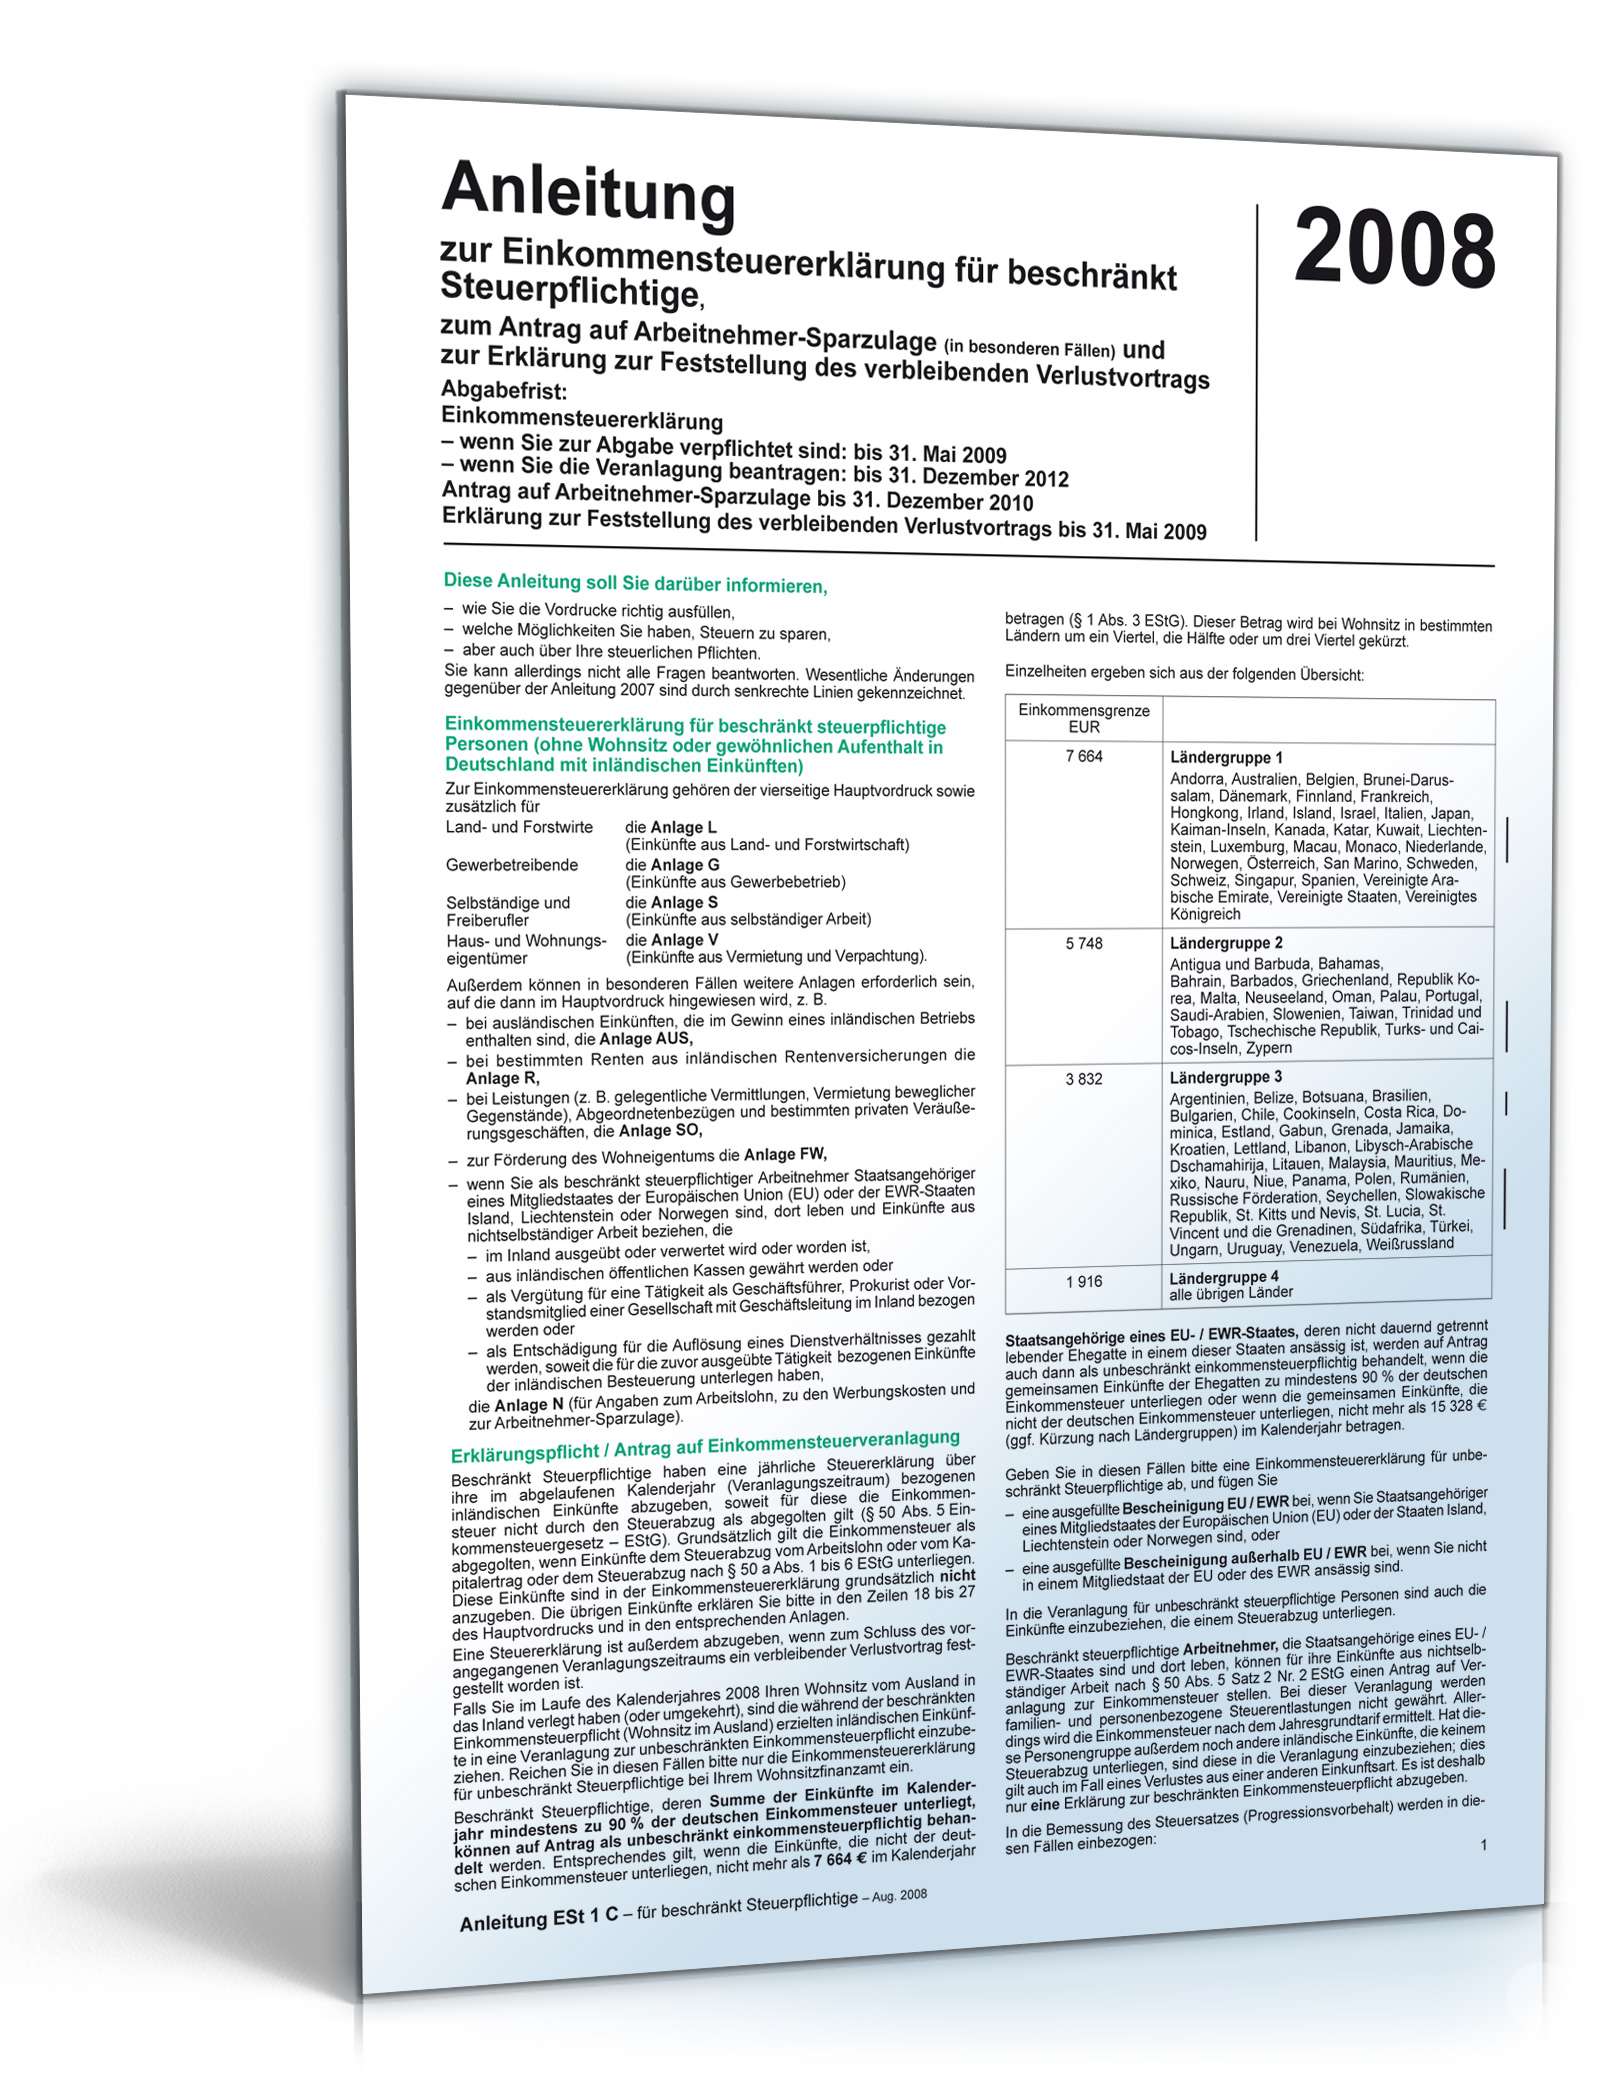 Hauptbild des Produkts: Anleitung Einkommensteuererklärung beschränkt 2008